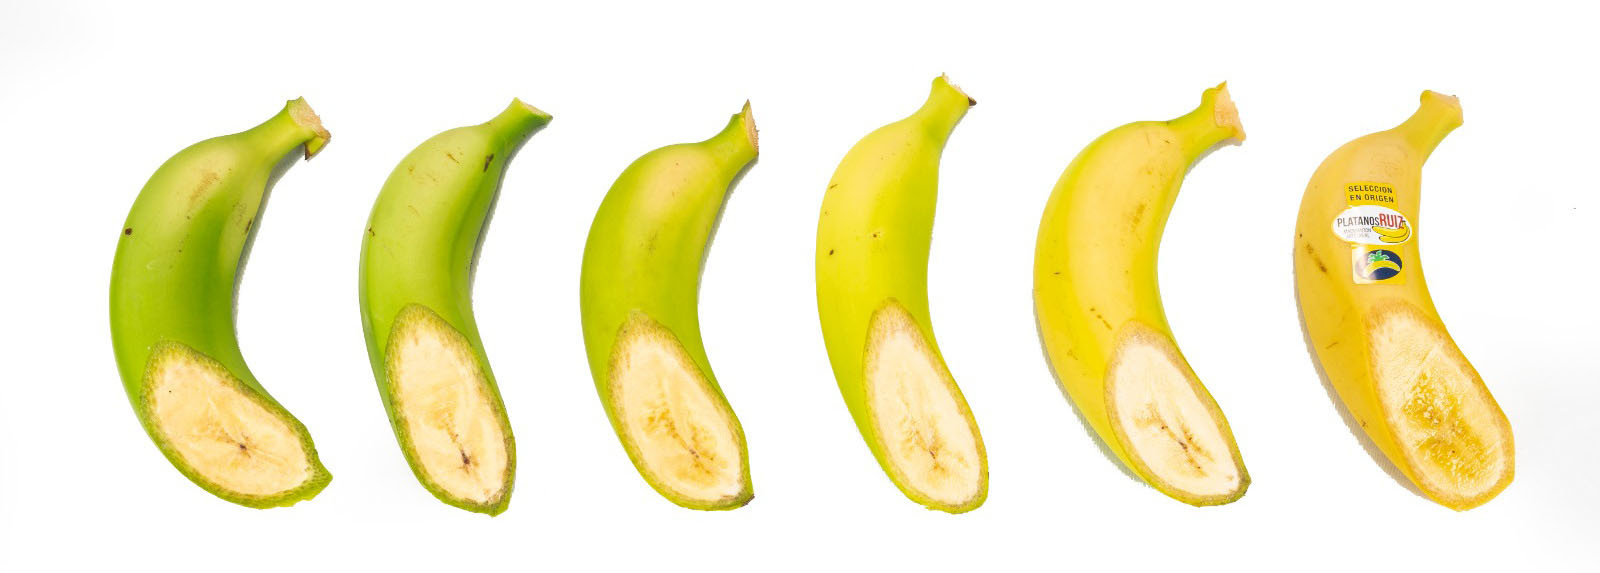 Maduración artesanal de plátanos